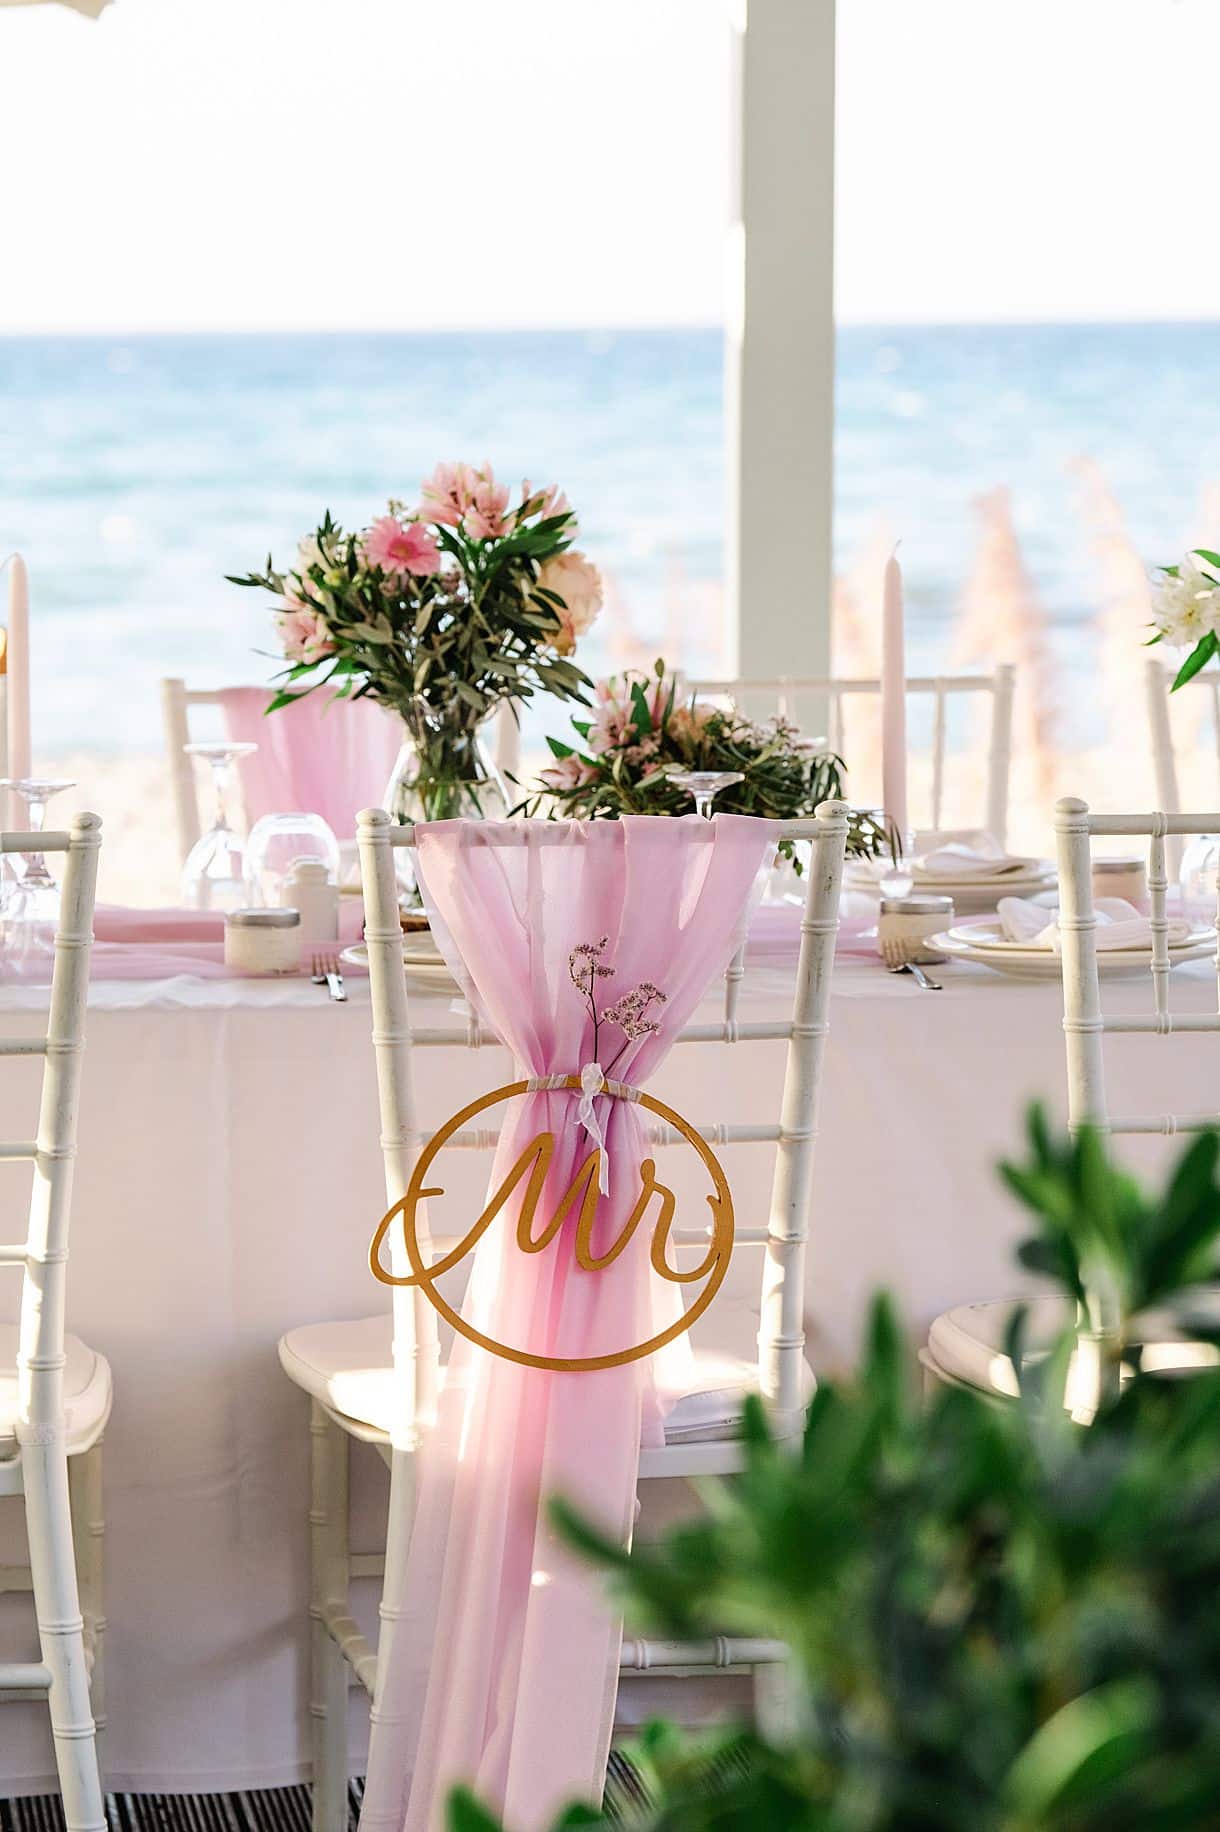 détail de la chaise du marié à la table de réception entouré d'un voile rose et écrit MR dessus. photos vue sur la plage en crête